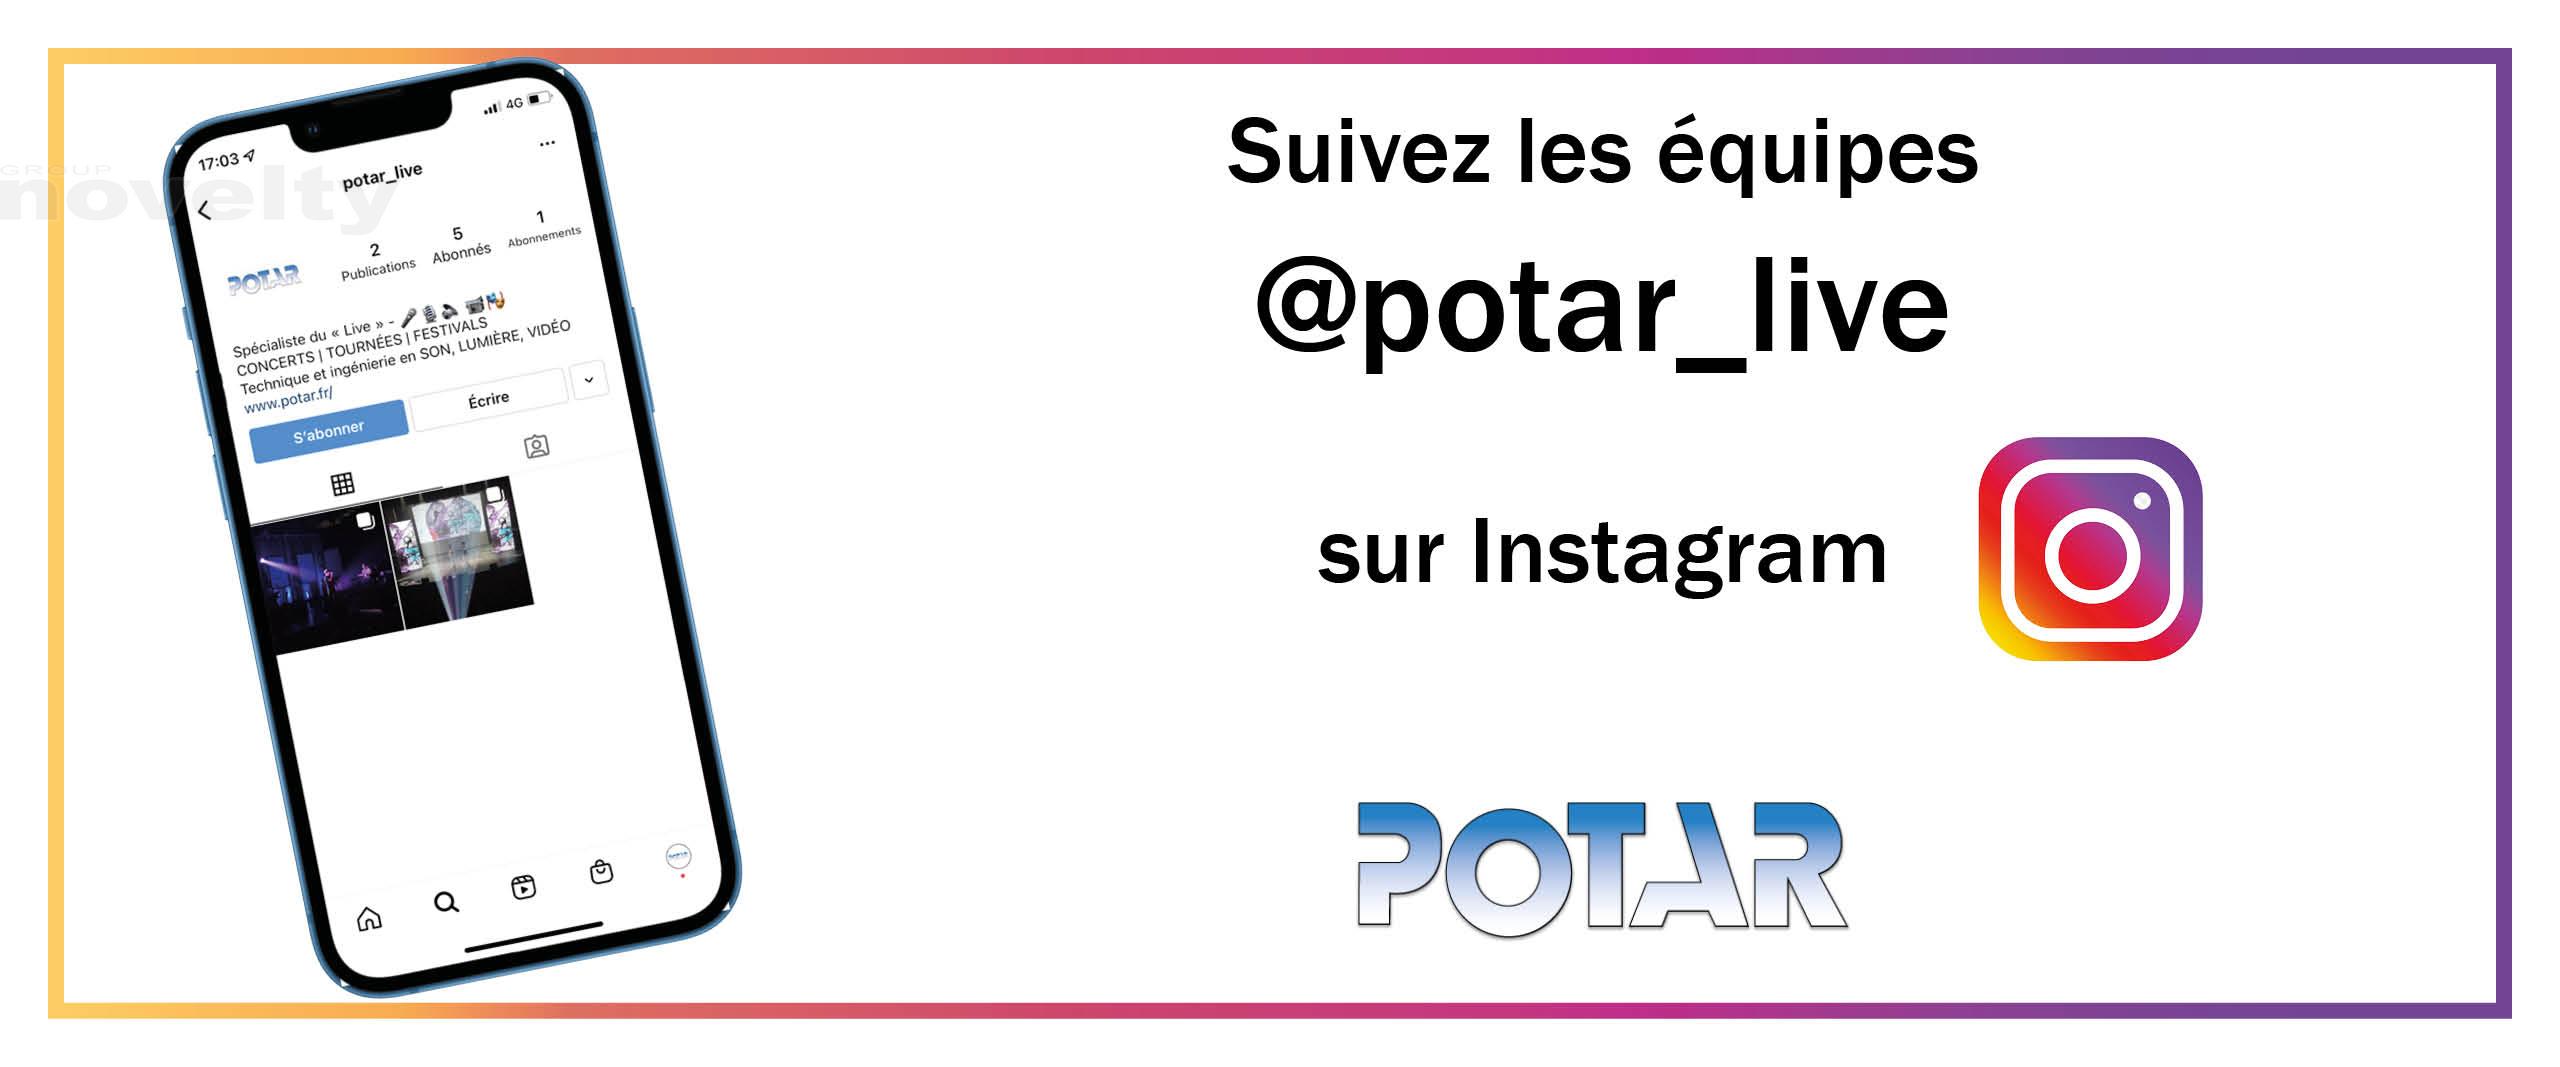 Visuel Suivez les équipes Potar sur Instagram !